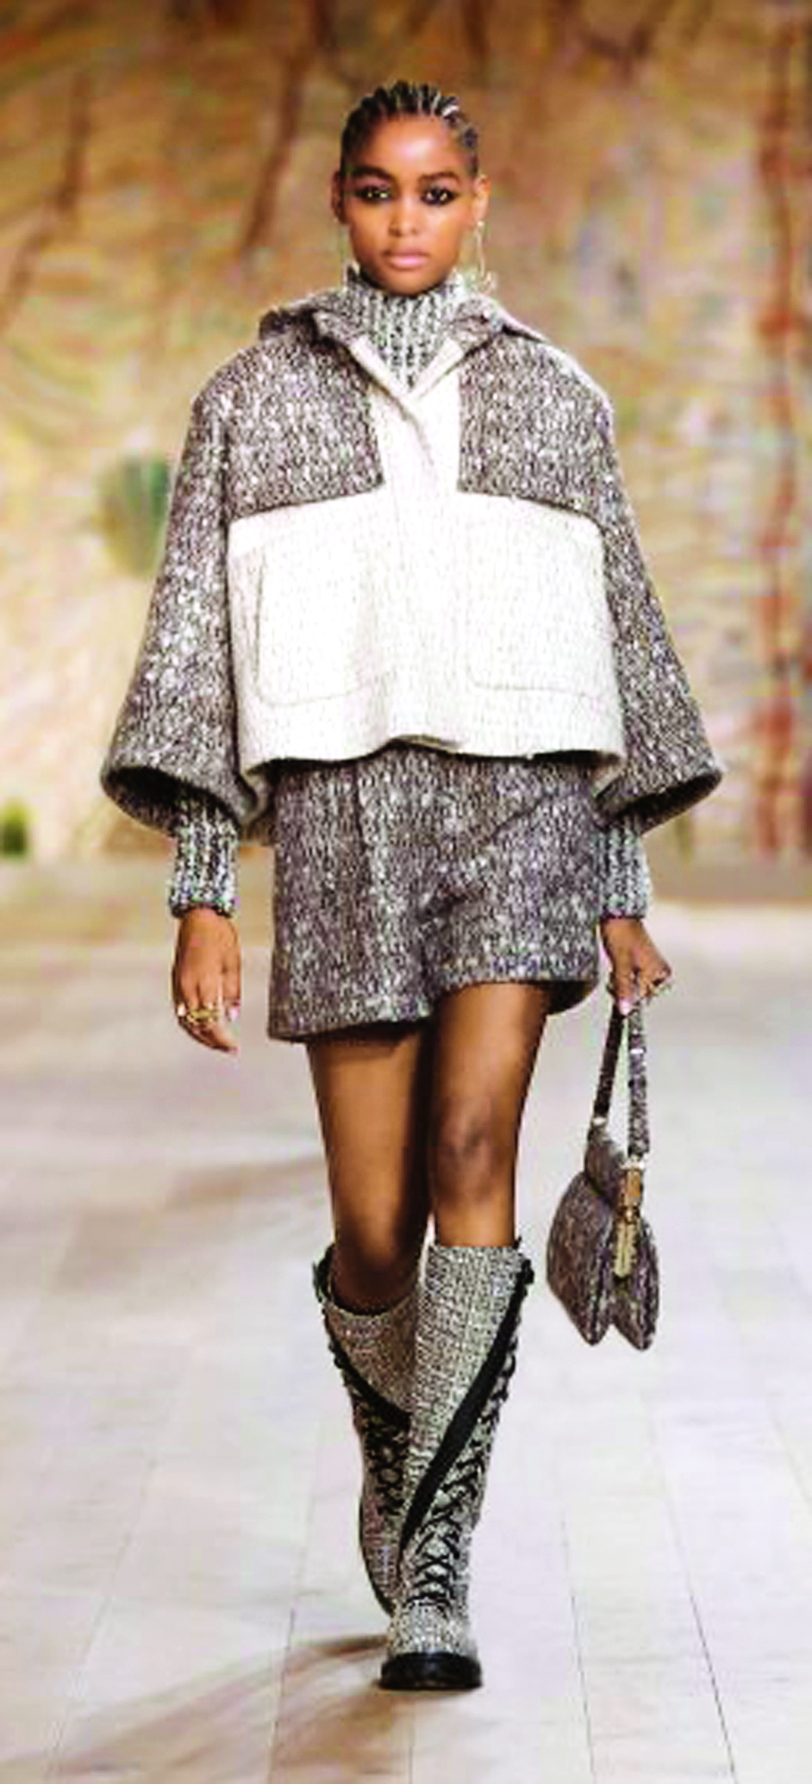 Mẫu boots chất liệu tweed của thương hiệu Dior mang đến cho phái đẹp vẻ ngoài thanh lịch, sành điệu và cá tính